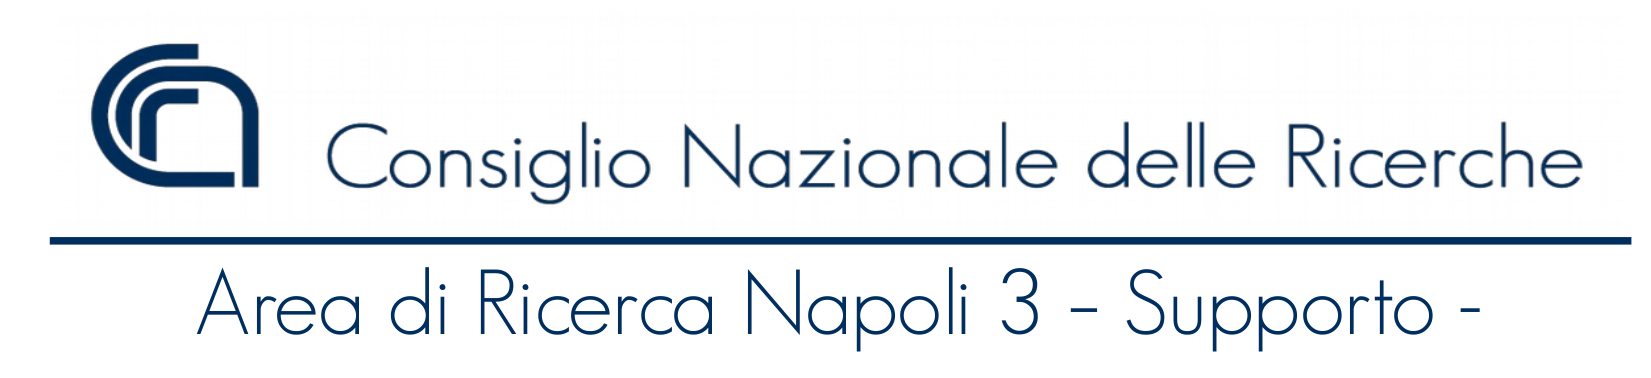 CNR - Area di Ricerca Napoli 3 - Supporto